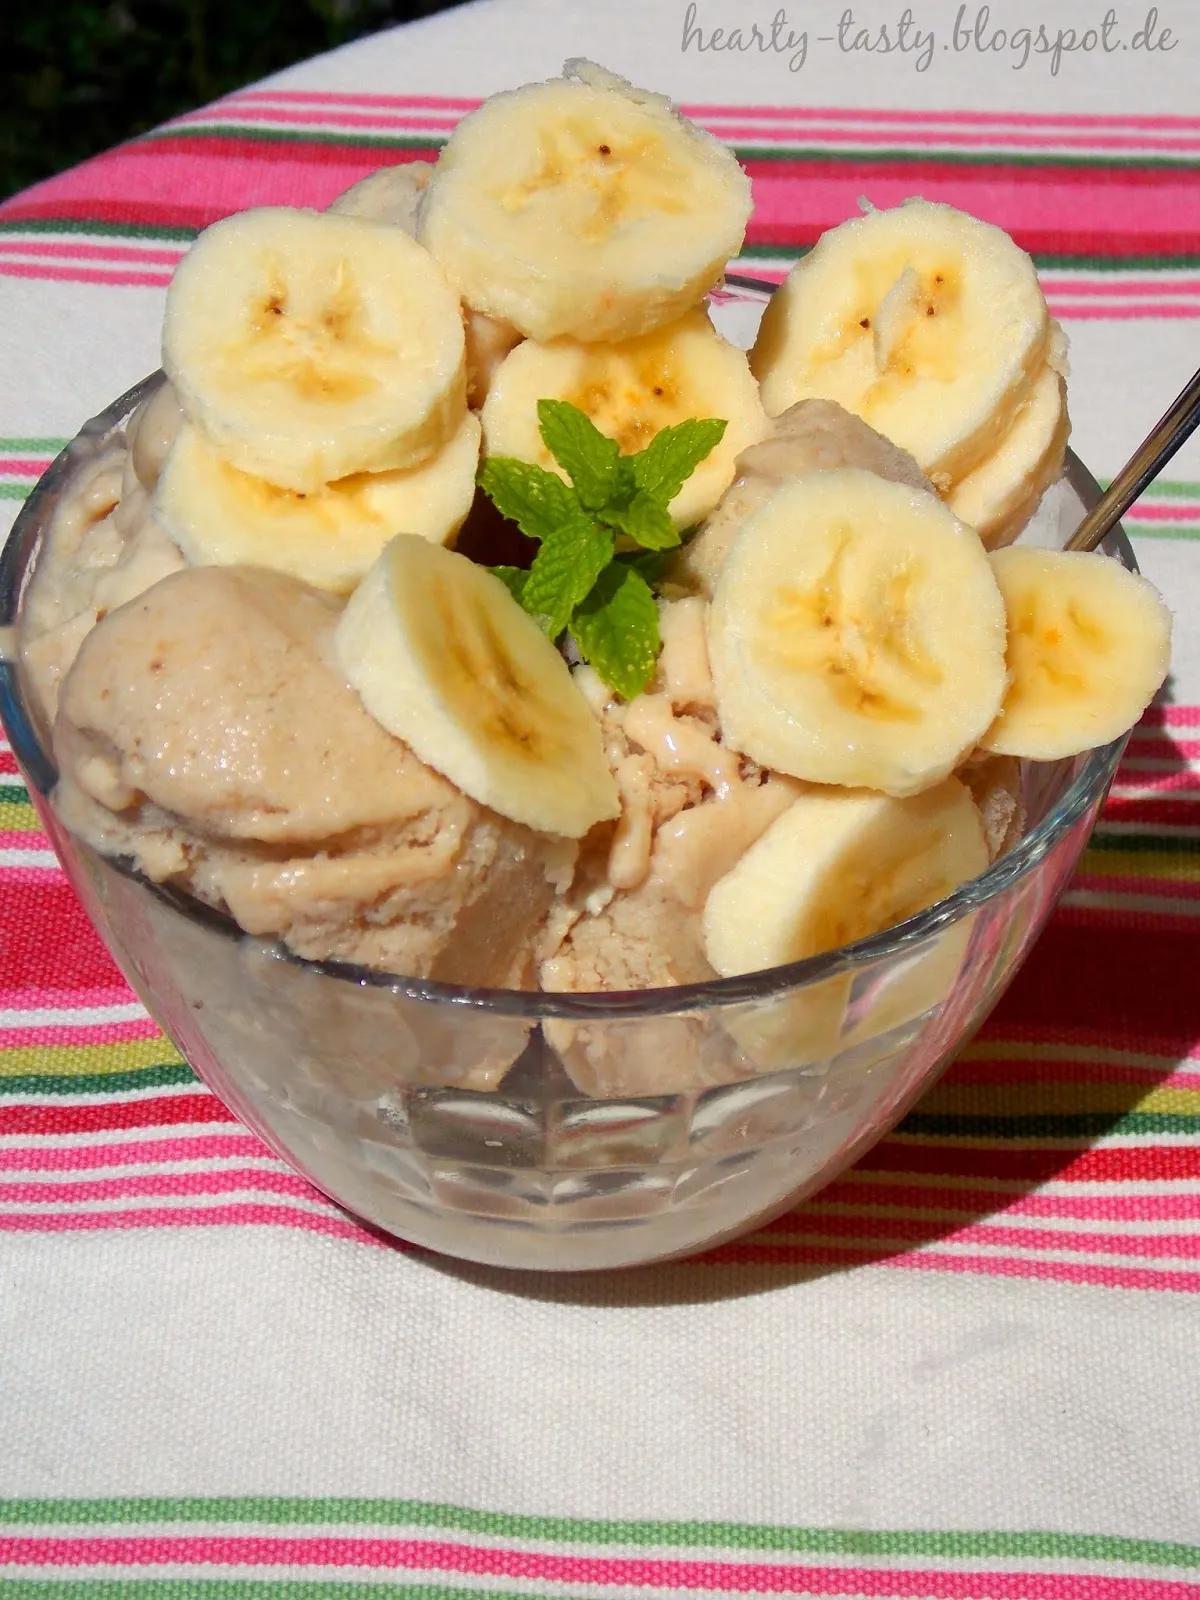 Hearty and Tasty: {Rezept} Bananen-Eis